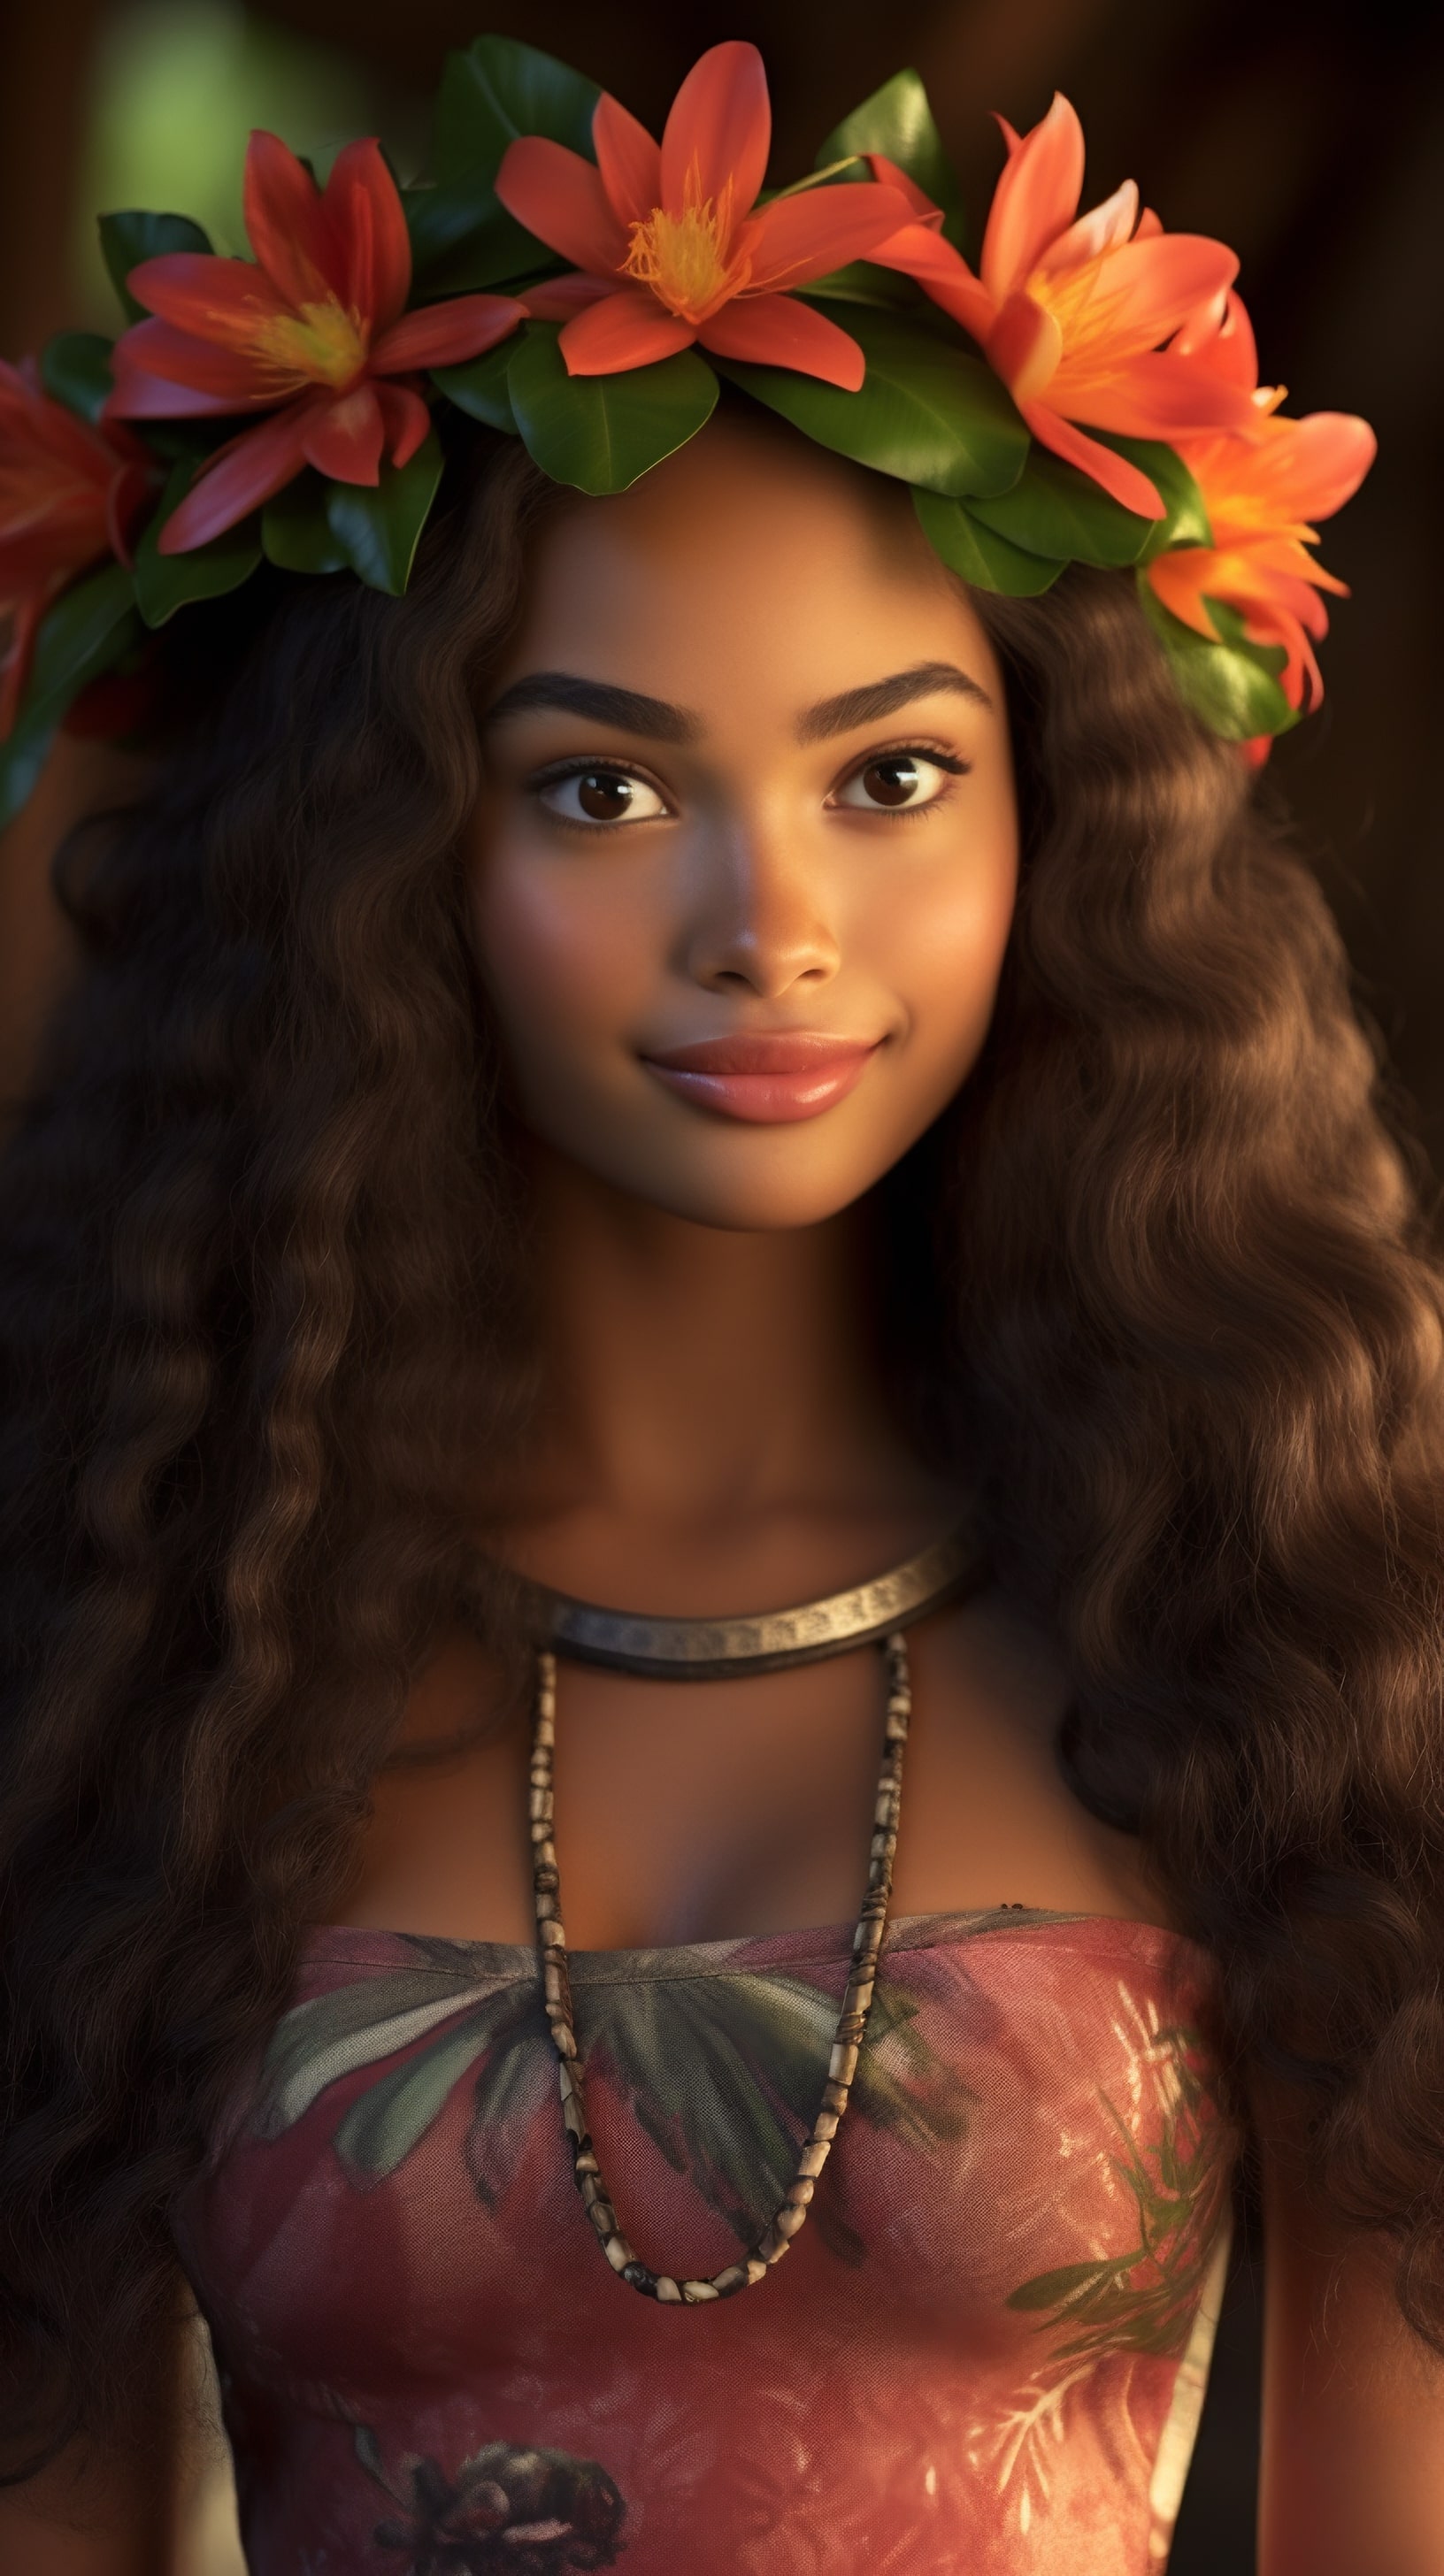 Украшение из цветов на голове полинезийской девушки